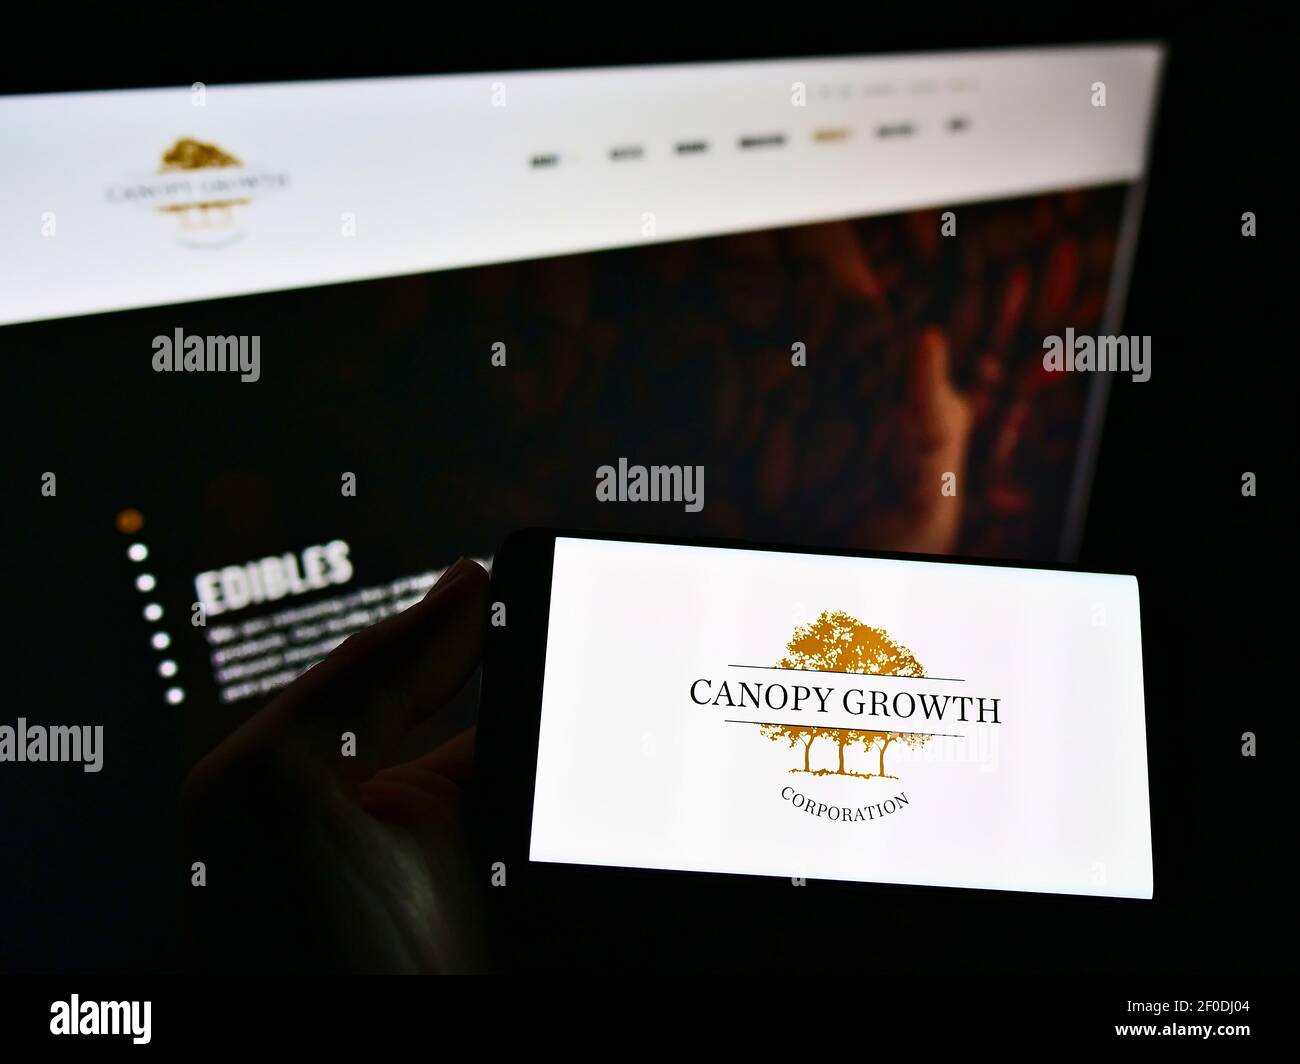 Persona che tiene il telefono mobile con il logo della Canadian cannabis Company Canopy Growth Corporation sullo schermo davanti alla pagina web. Mettere a fuoco il display del telefono. Foto Stock